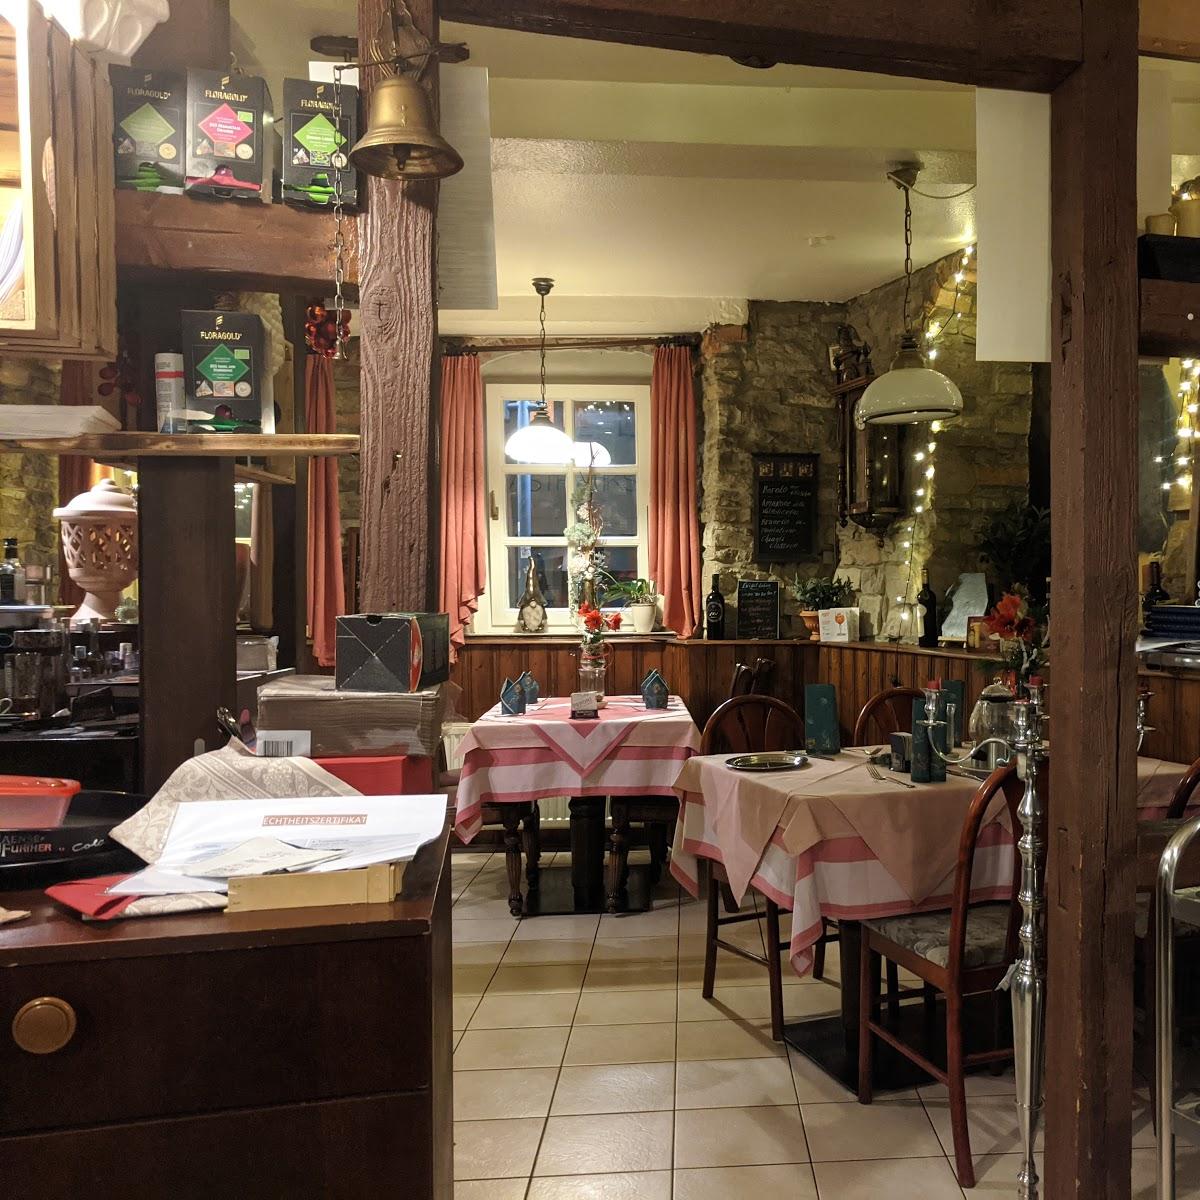 Restaurant "Ristorante Carpaccio" in Sangerhausen